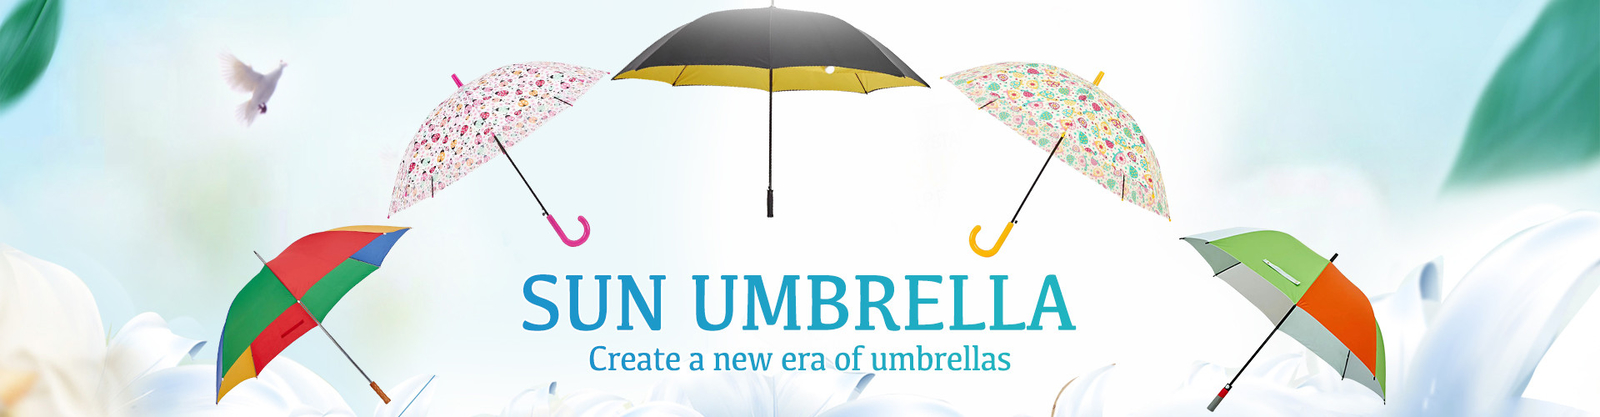 Compact Golf Umbrella